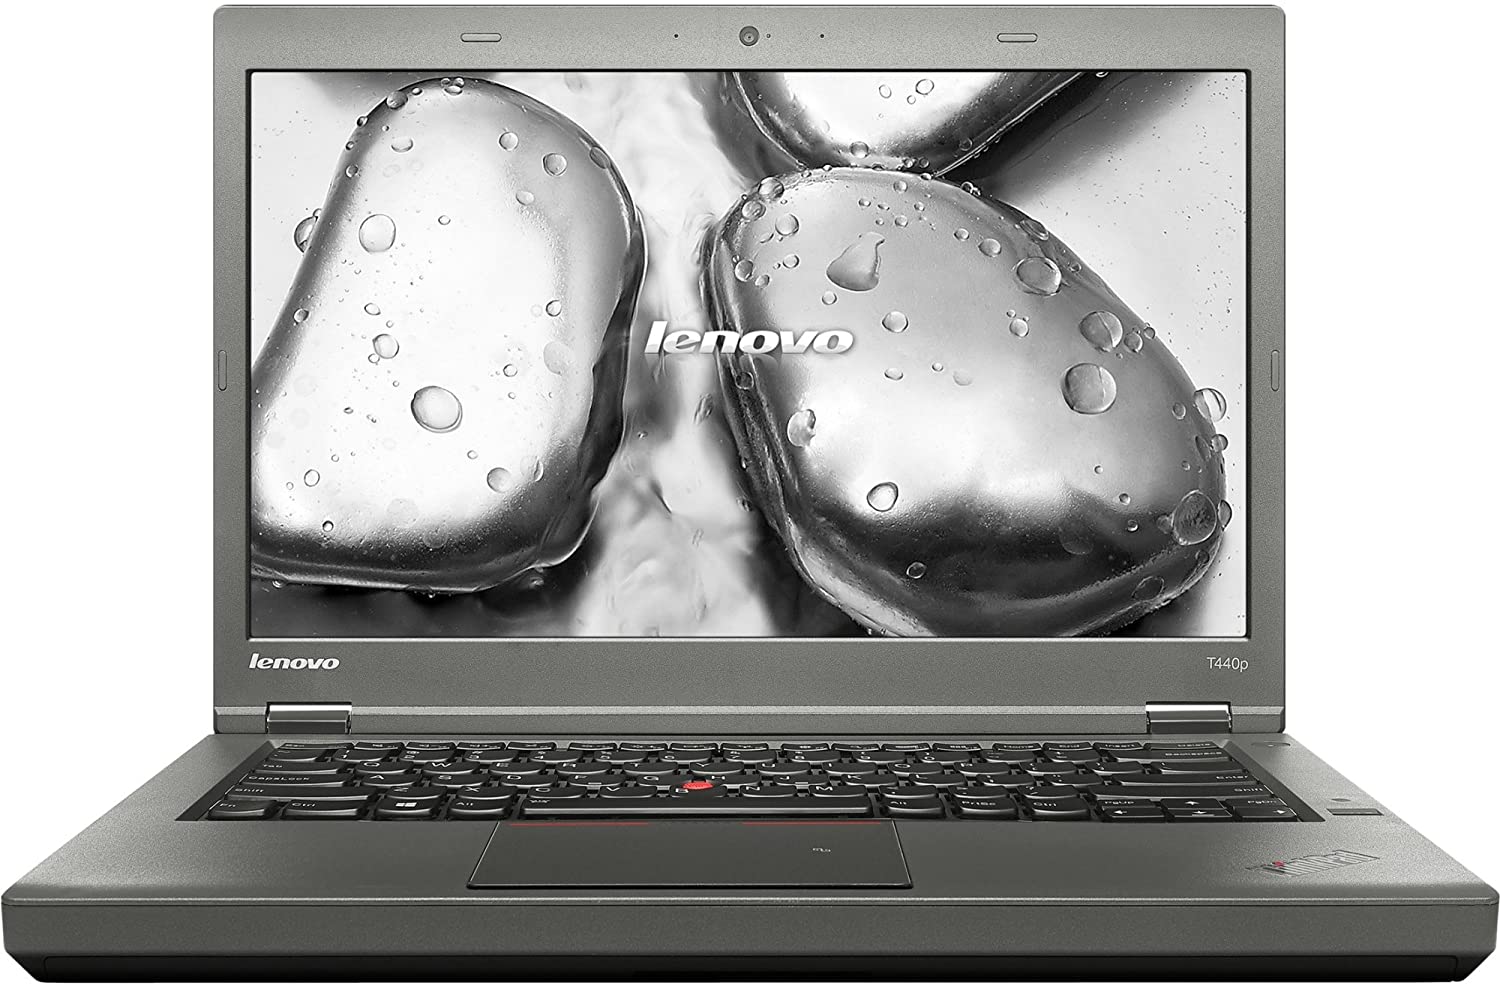 Lenovo ThinkPad T440p (Intel i7-4600M, 16GB) - Refurbish Canada